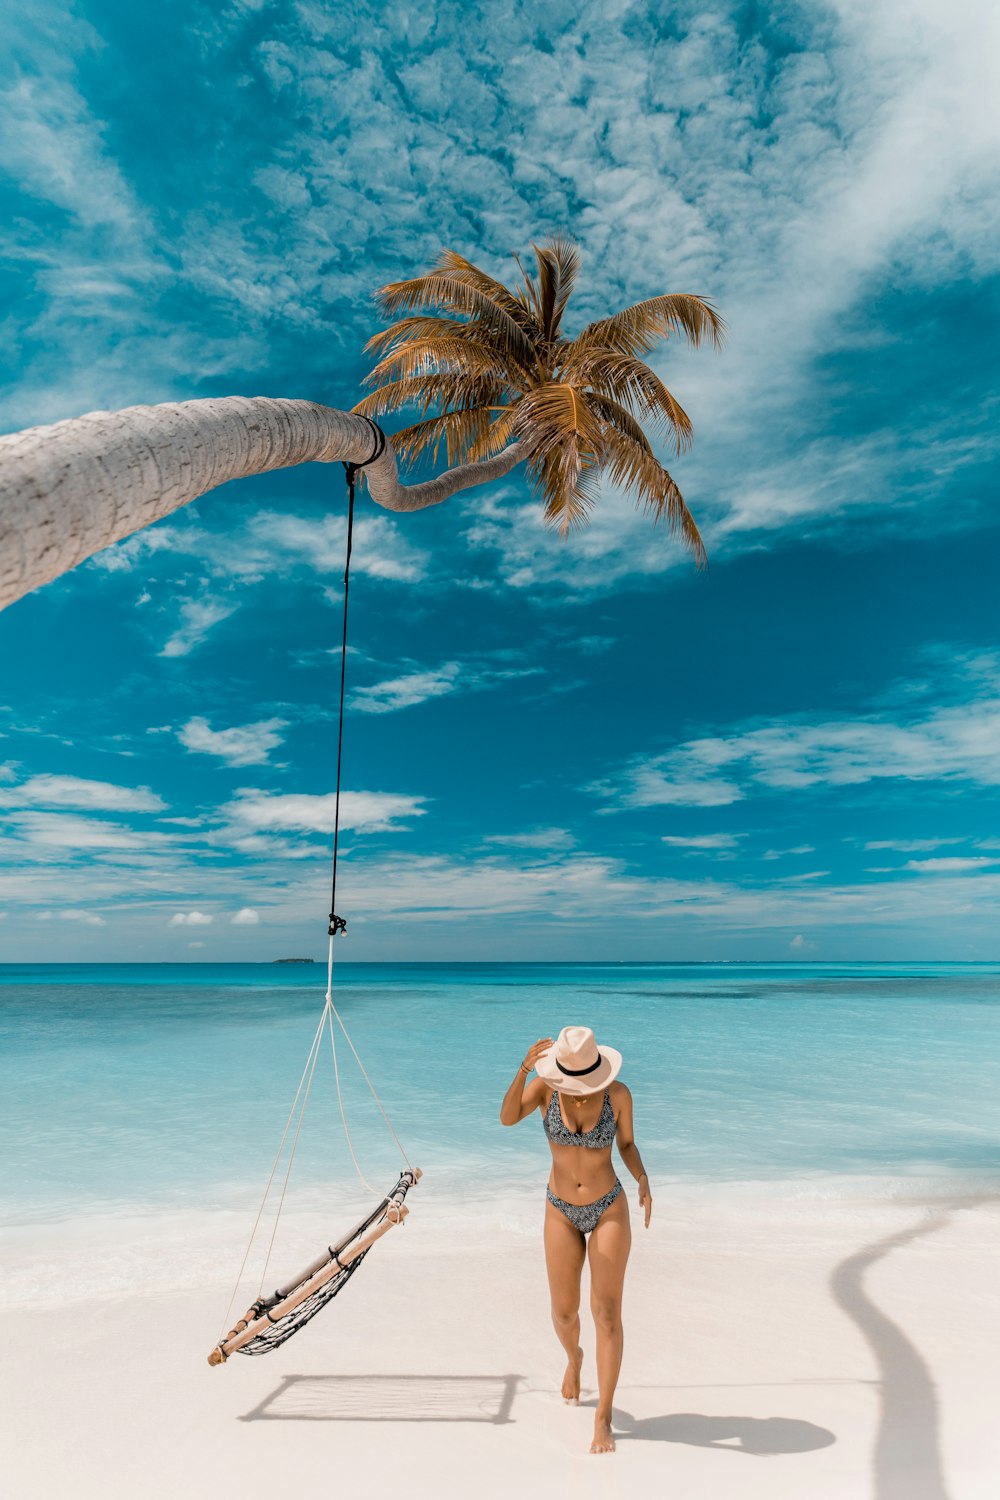 eine Person, die an einem Strand mit einer Palme und einem Boot steht